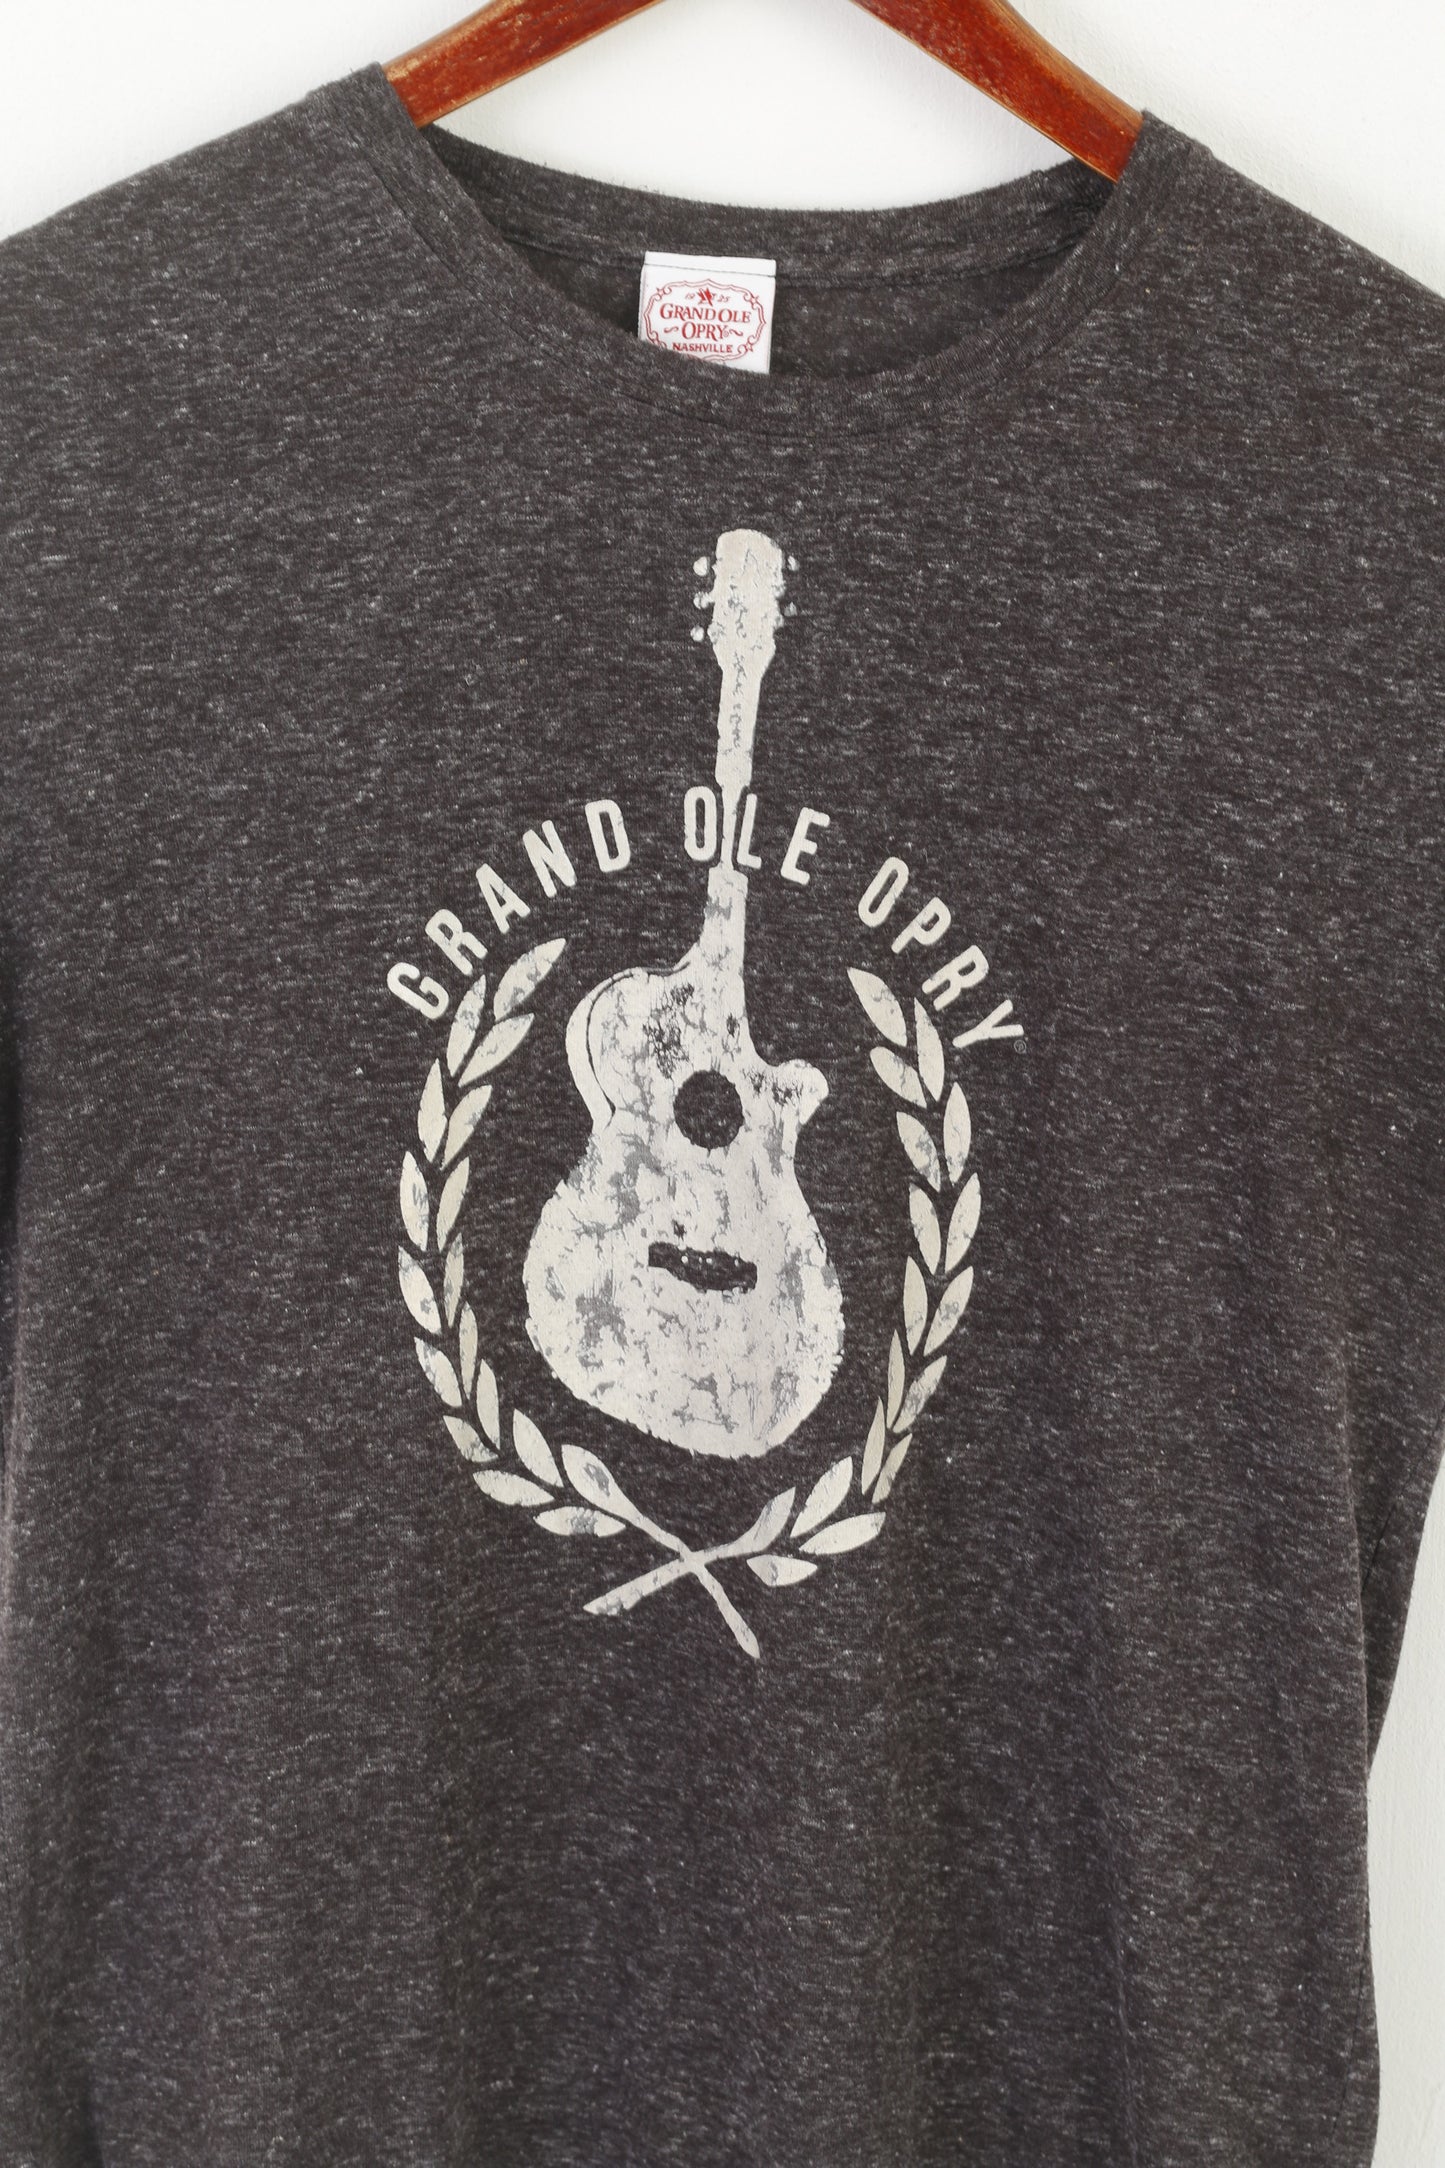 T-shirt Grandole Nashville da donna L. Top Grand Ole Opry con grafica in cotone grigio